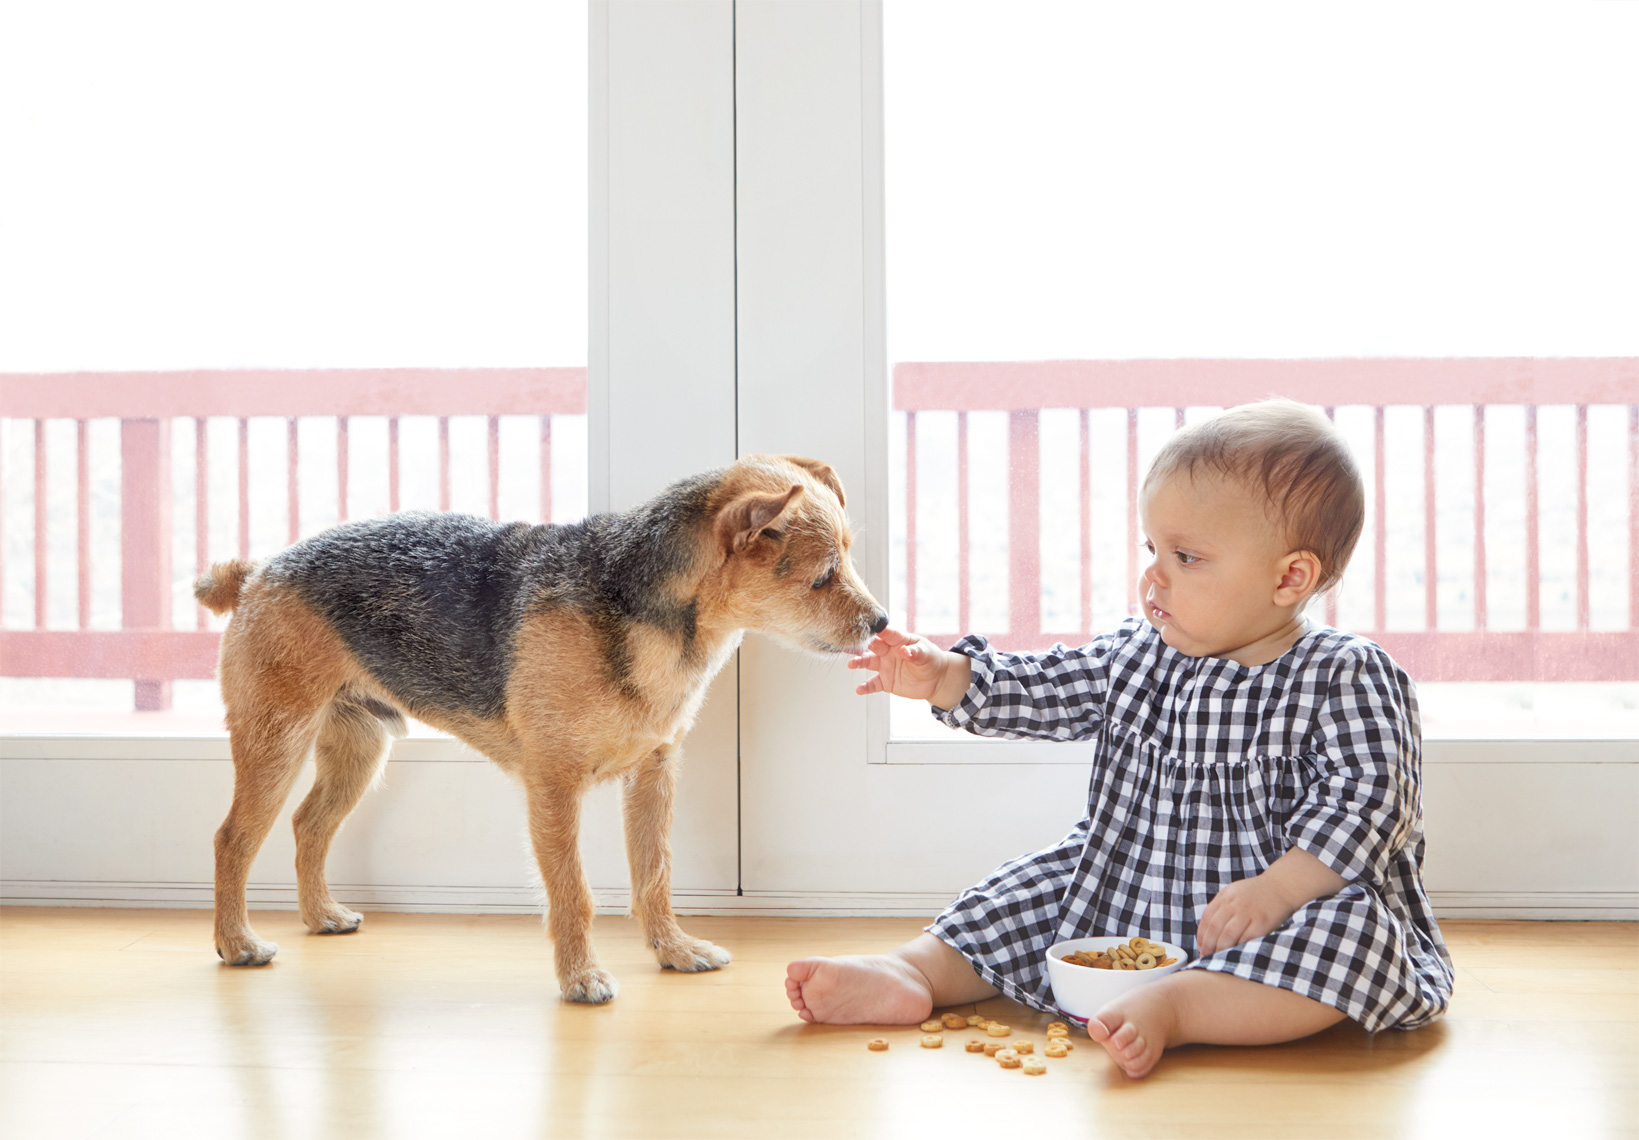 Toddler feeding cheerios to dog